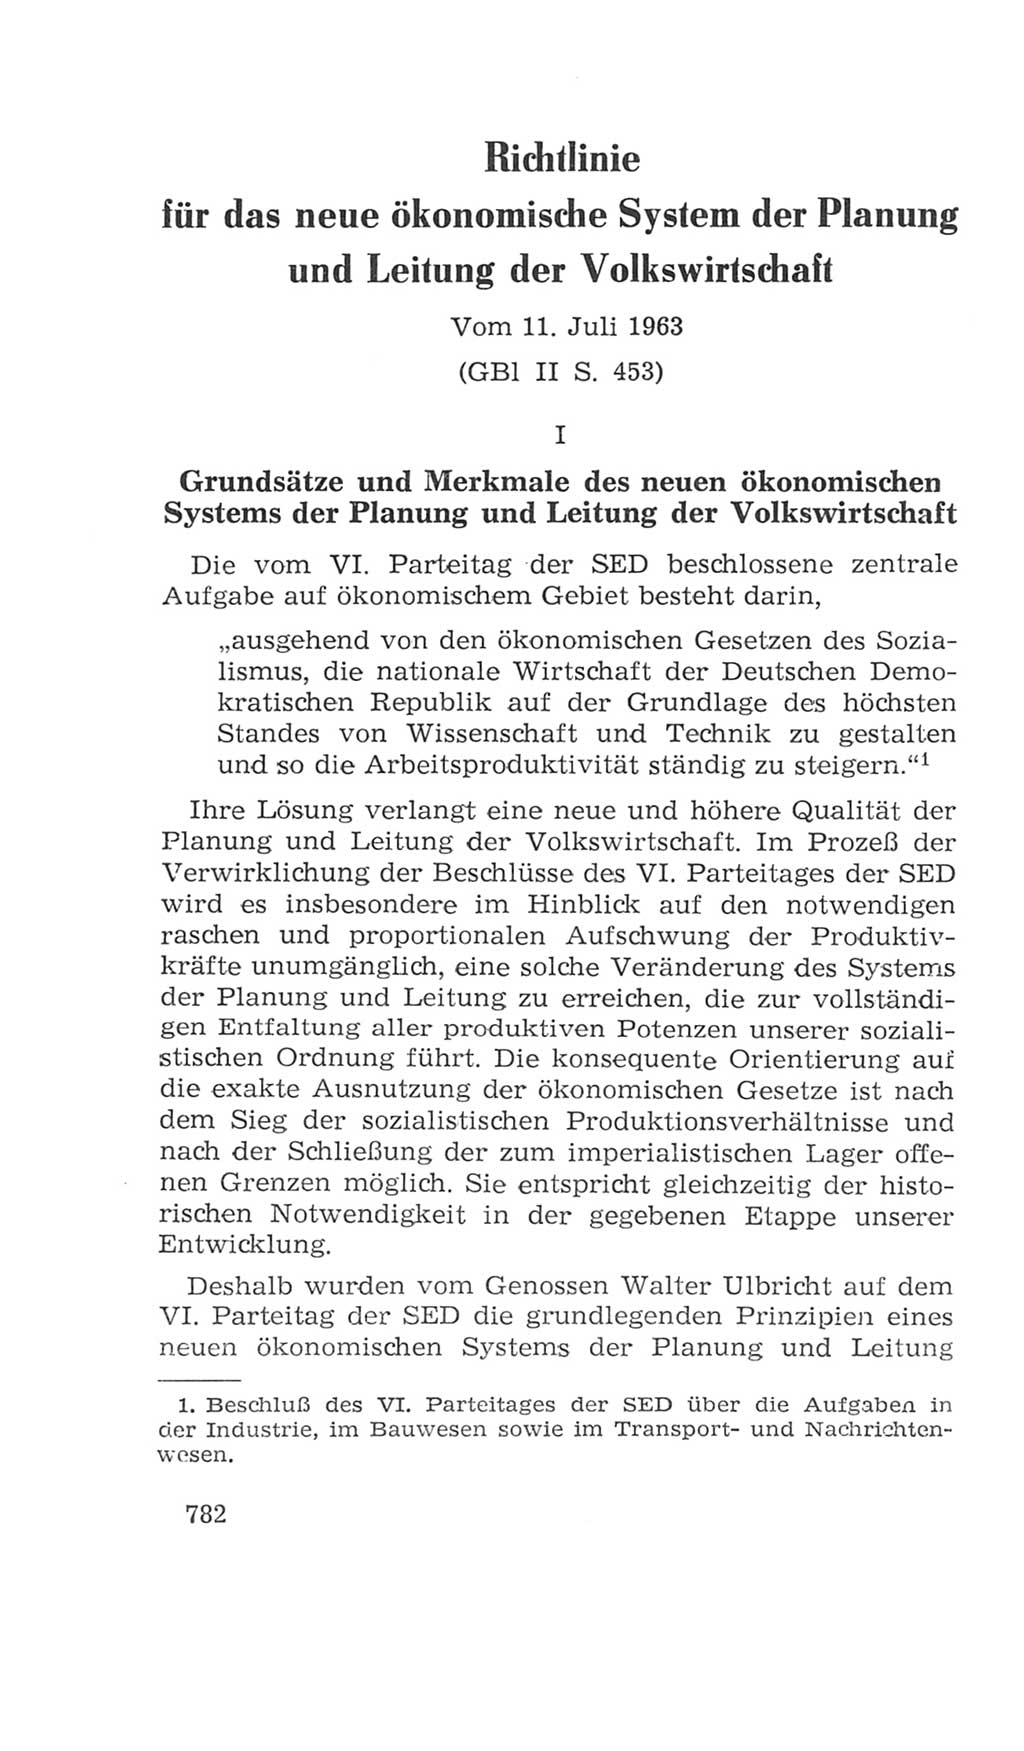 Volkskammer (VK) der Deutschen Demokratischen Republik (DDR), 4. Wahlperiode 1963-1967, Seite 782 (VK. DDR 4. WP. 1963-1967, S. 782)